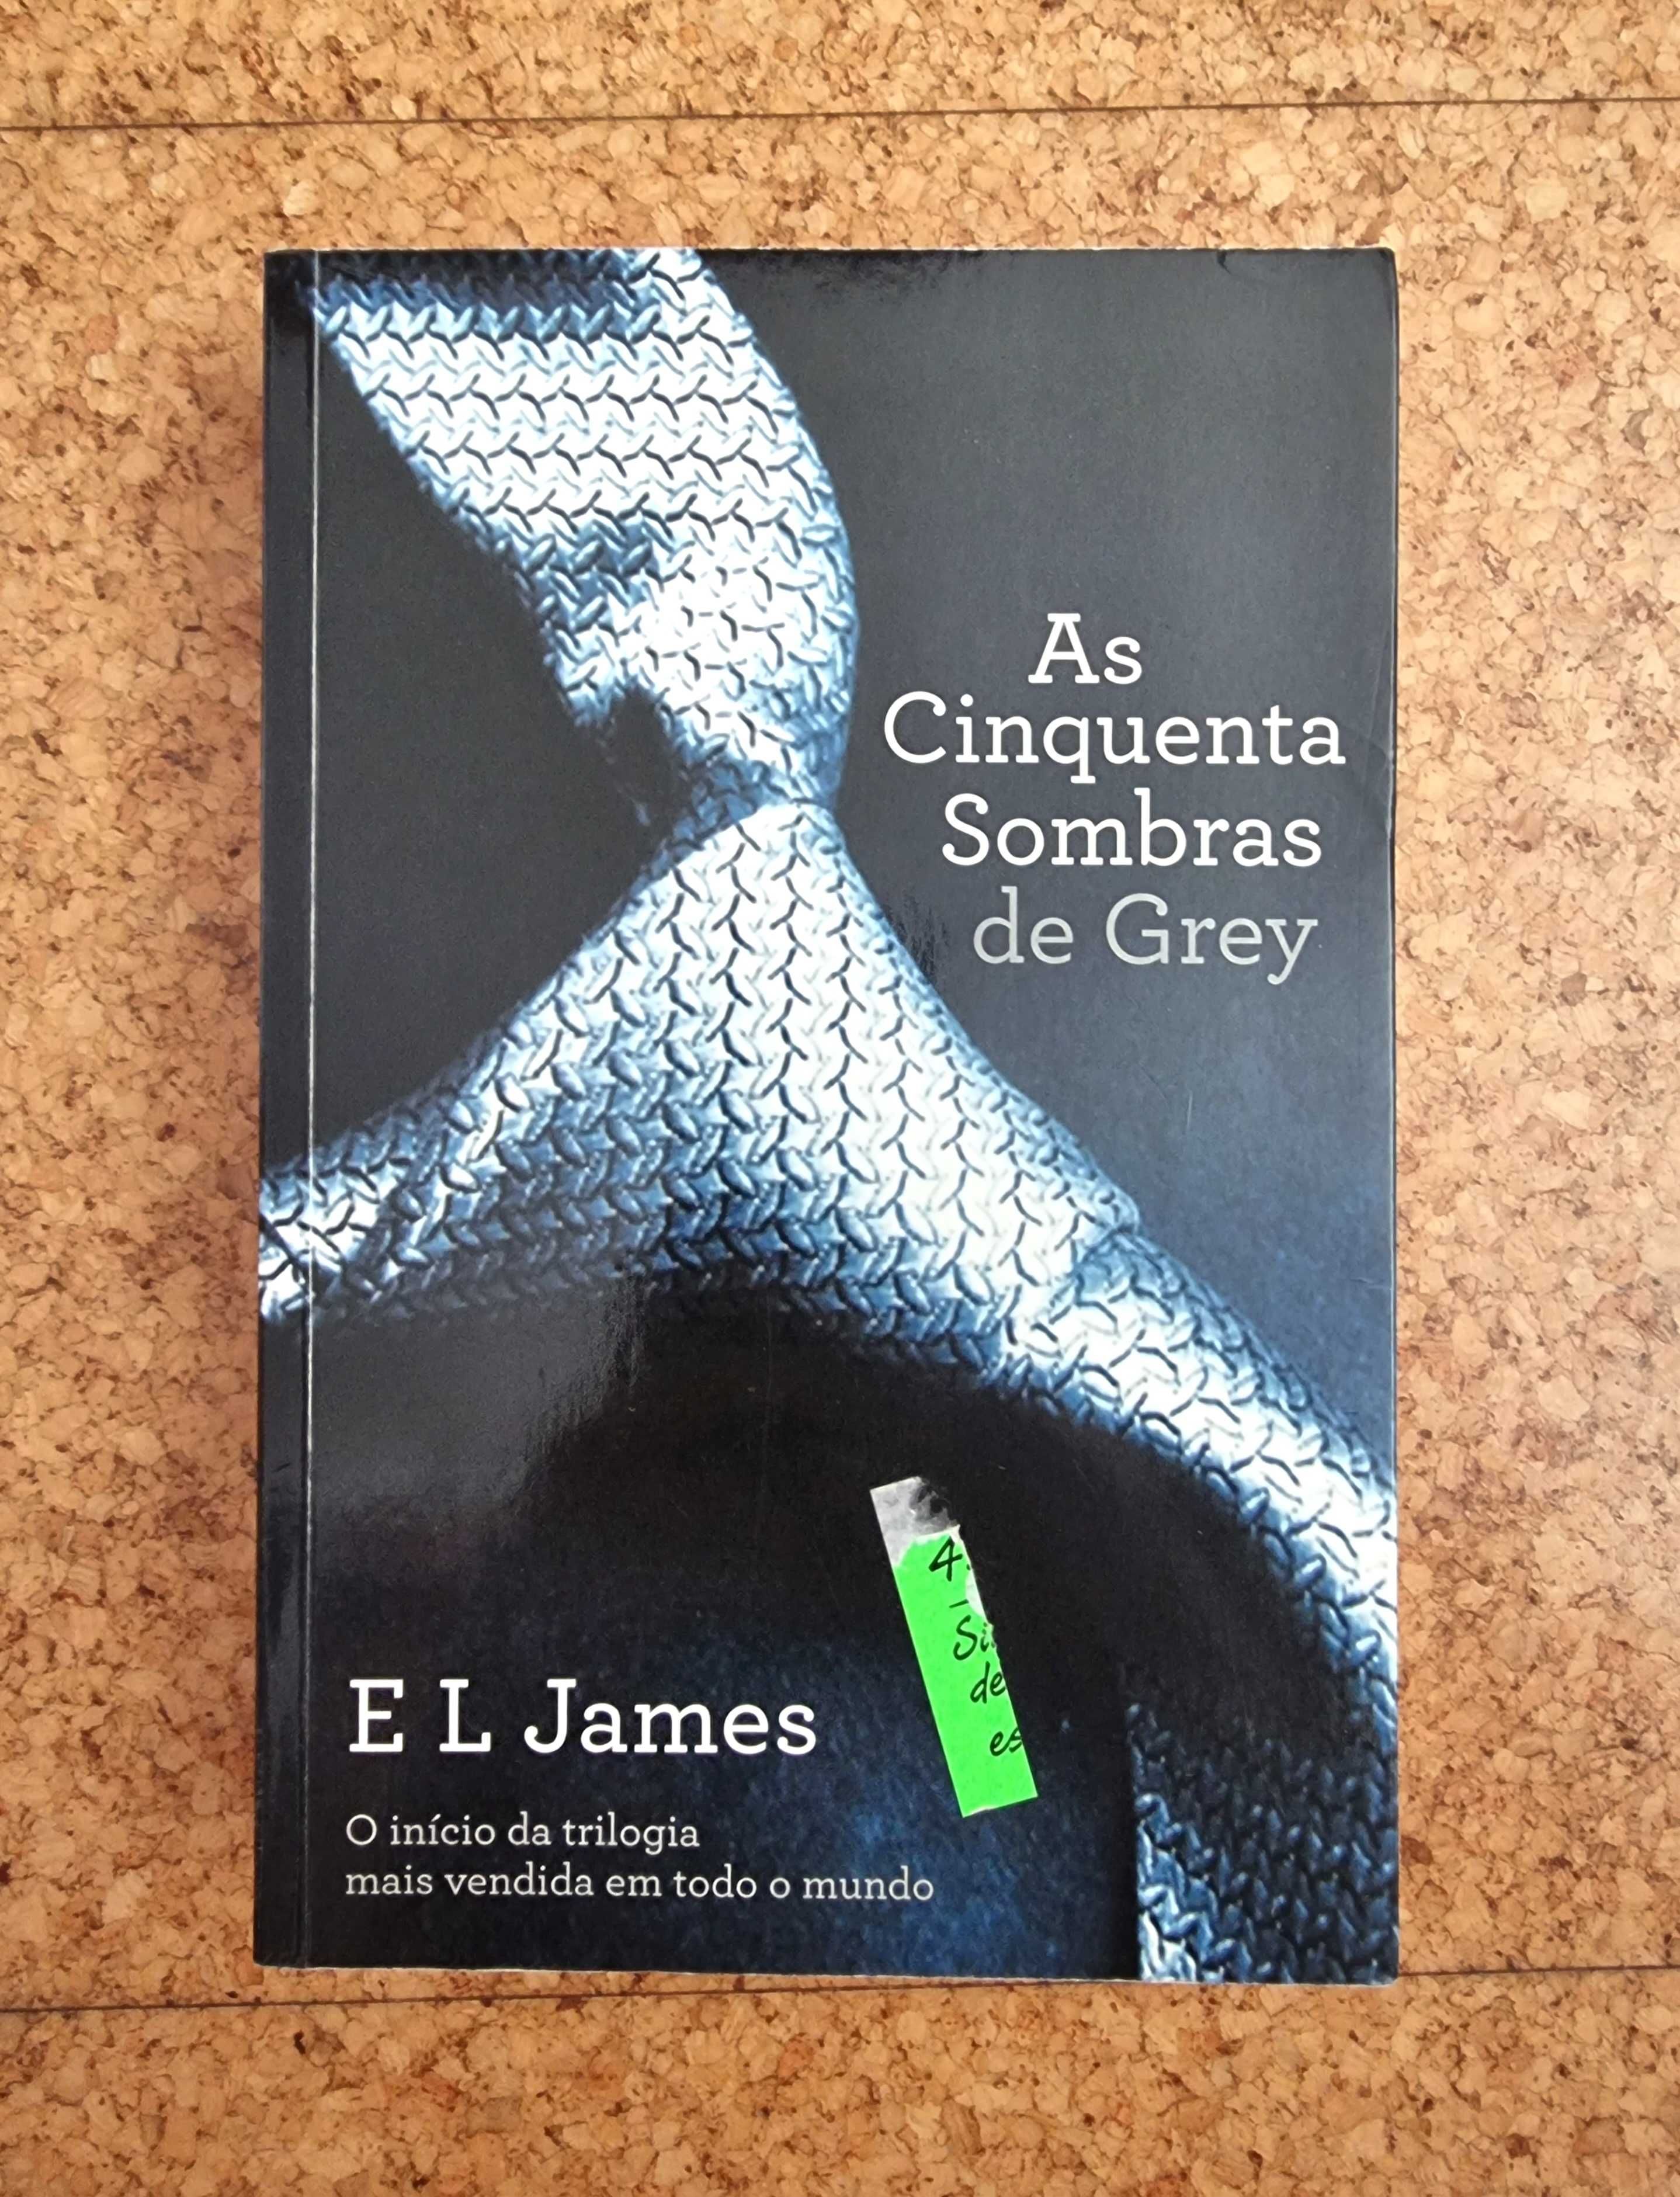 Livro "As Cinquenta Sombras de Grey" de E. L. James